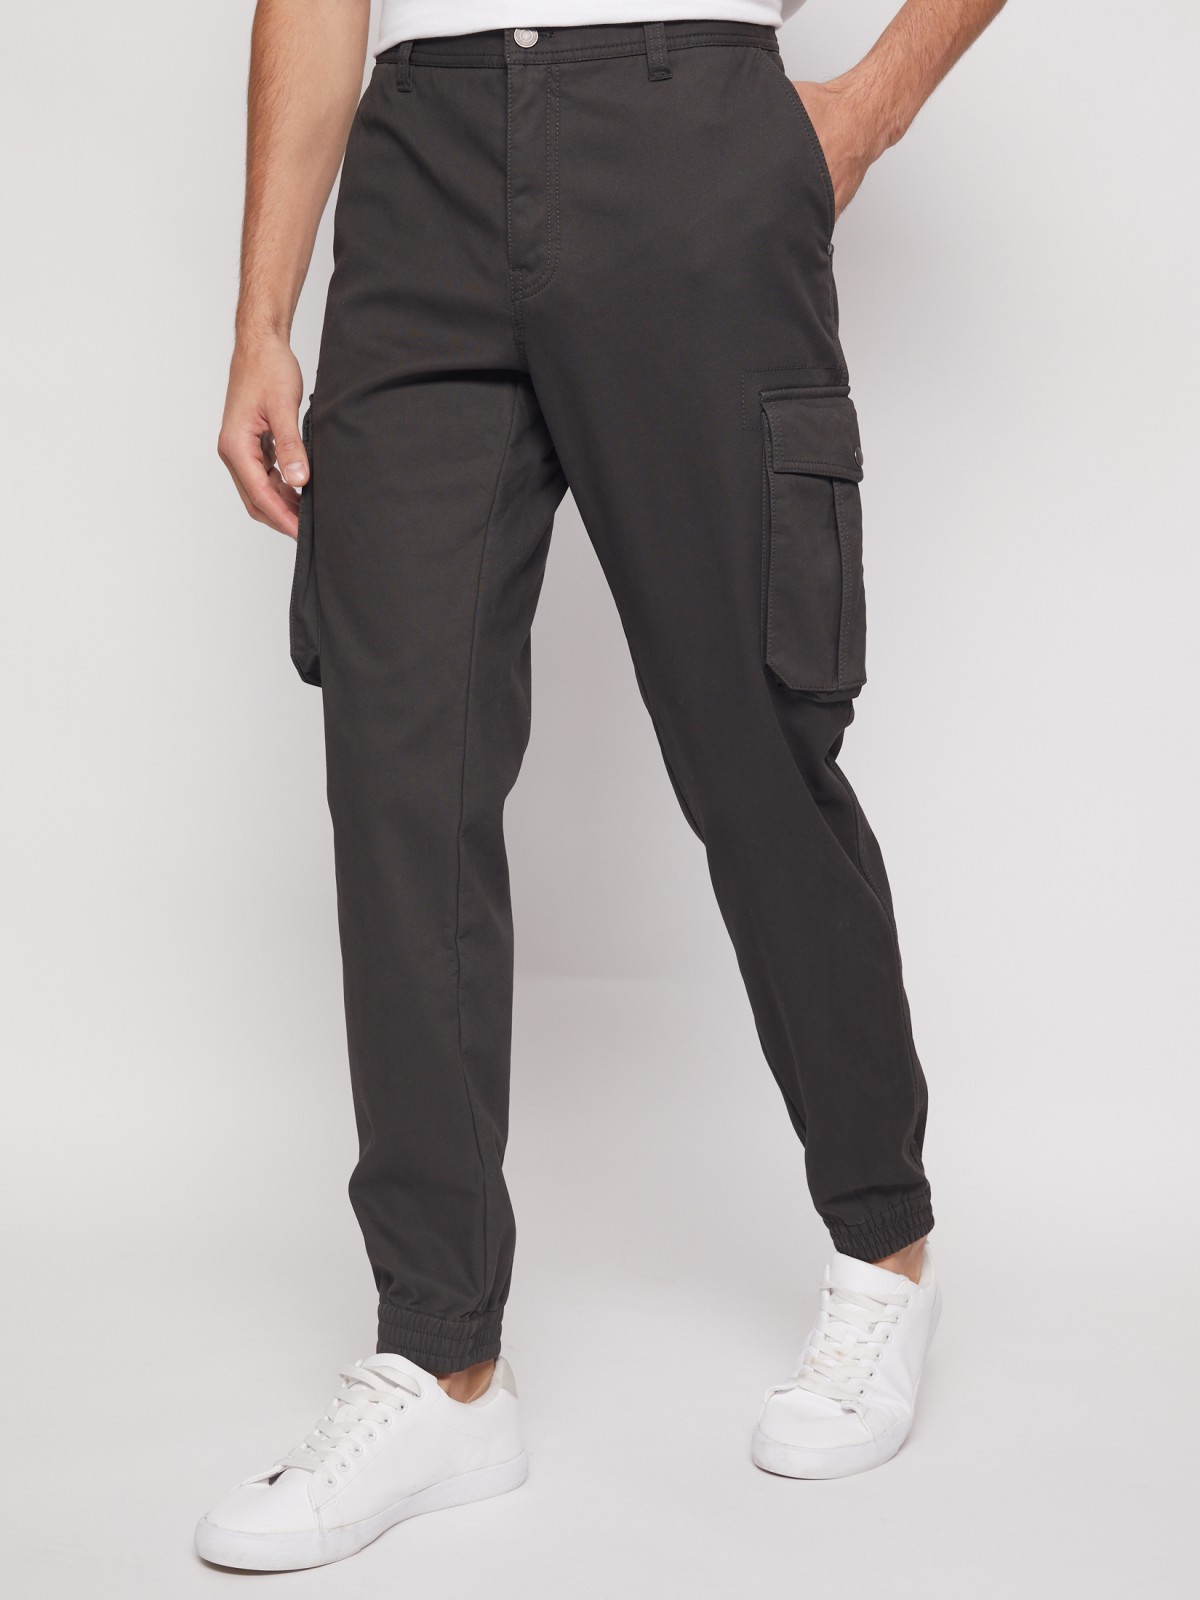 Хлопковые брюки-джоггеры с карманами карго zolla 21143730L021, цвет хаки, размер 28 - фото 3